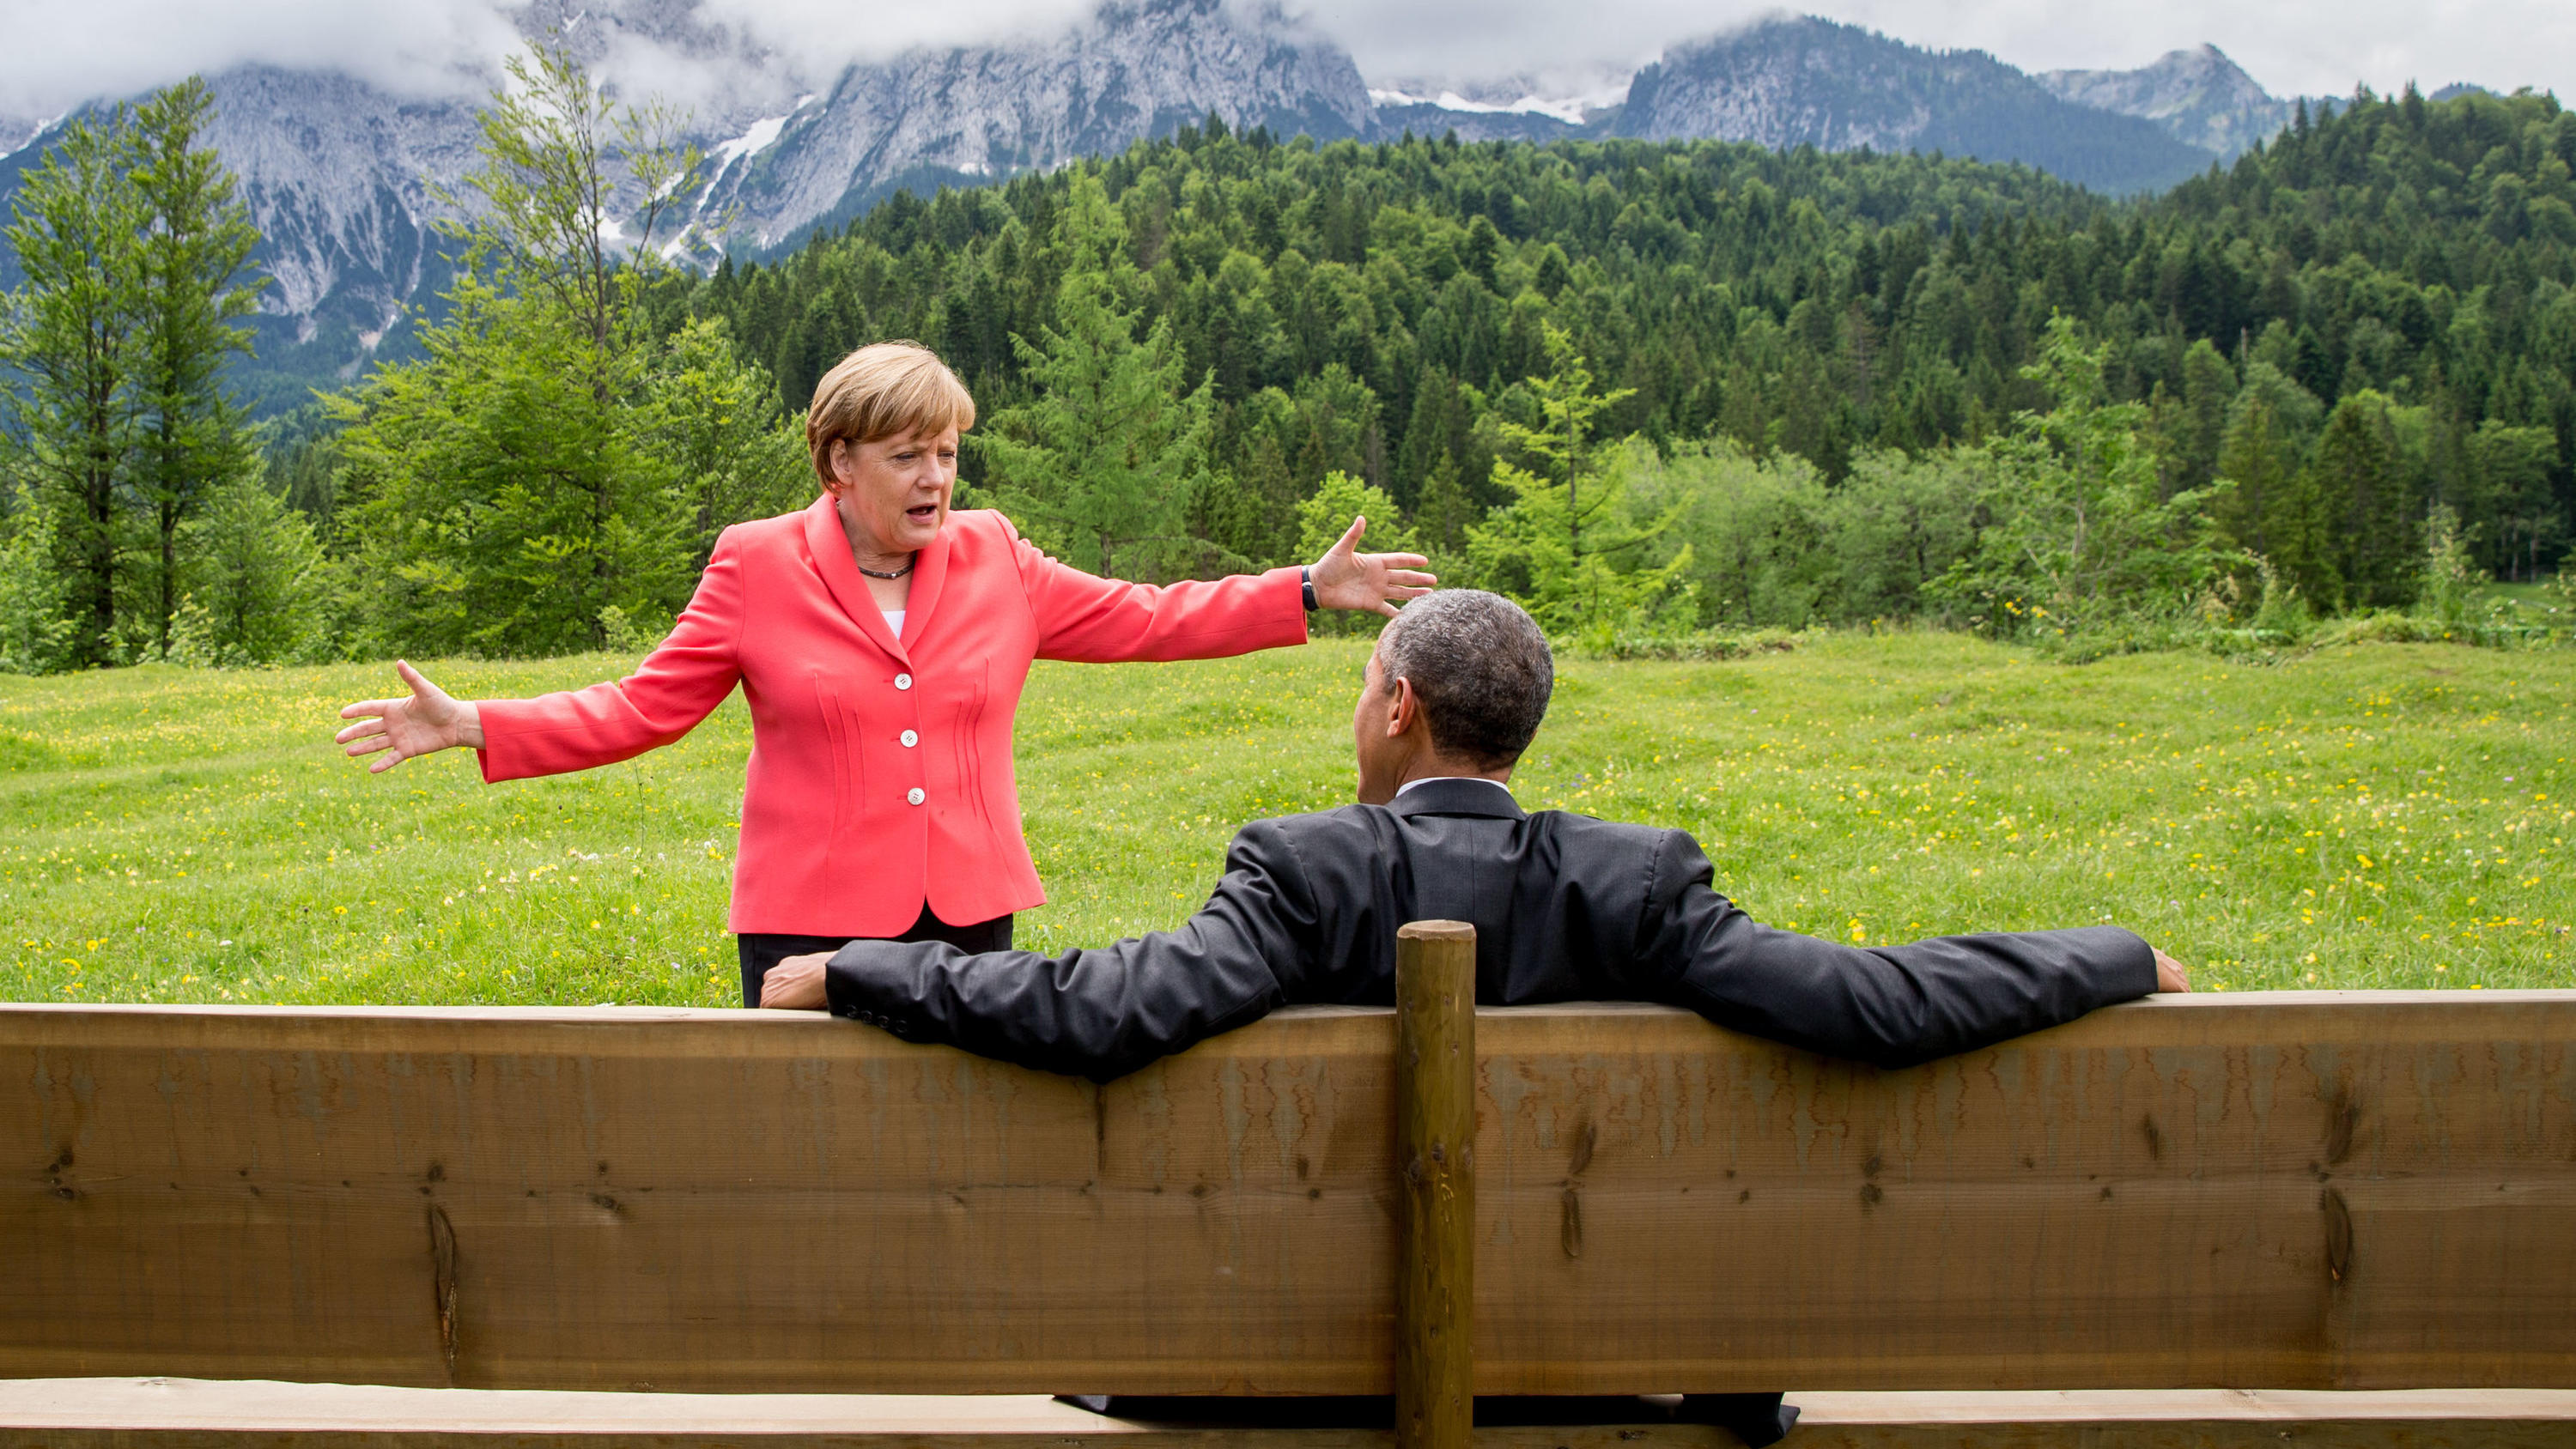 ARCHIV - 08.06.2015, Bayern, Elmau: Bundeskanzlerin Angela Merkel spricht im Rahmen der G7 Konferenz mit US-Präsident Barack Obama auf einer Wiese bei Schloss Elmau vor der Wettersteinspitze. (zu dpa: Obama: Merkel ist eine herausragende Führungspers